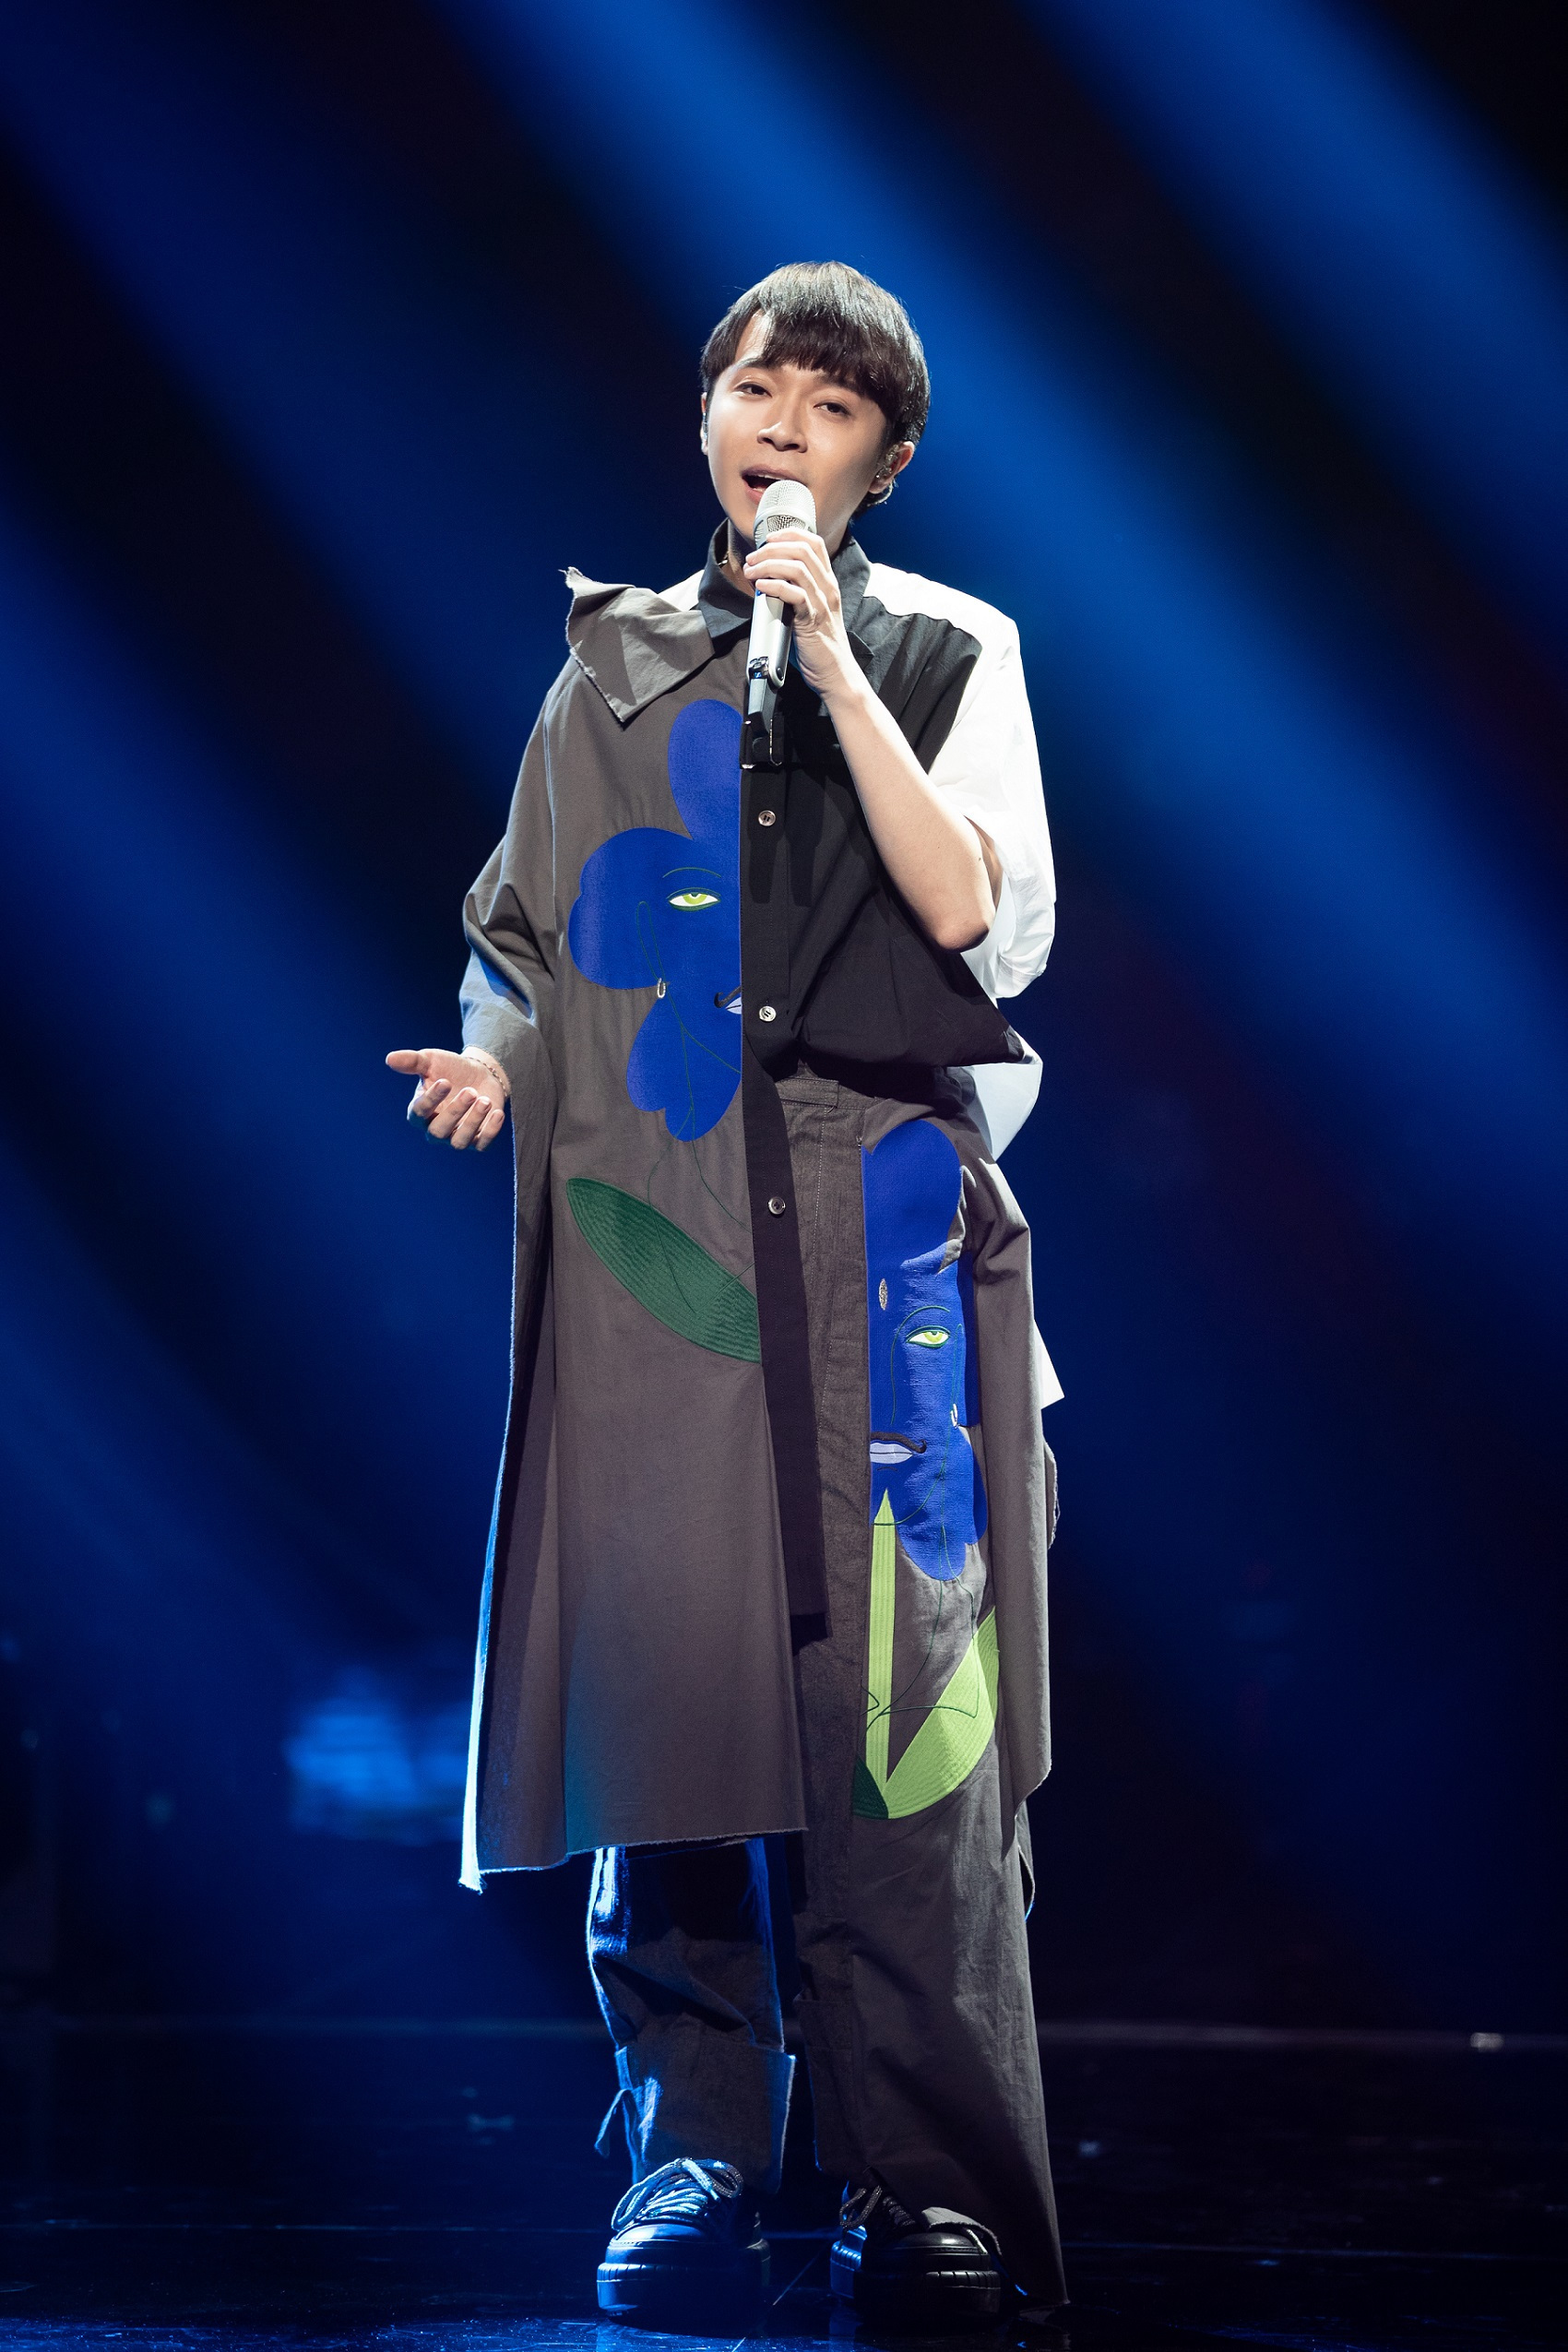 歌手吴青峰在第九期节目中惊喜演绎两首民谣老歌《那些花儿》及《望